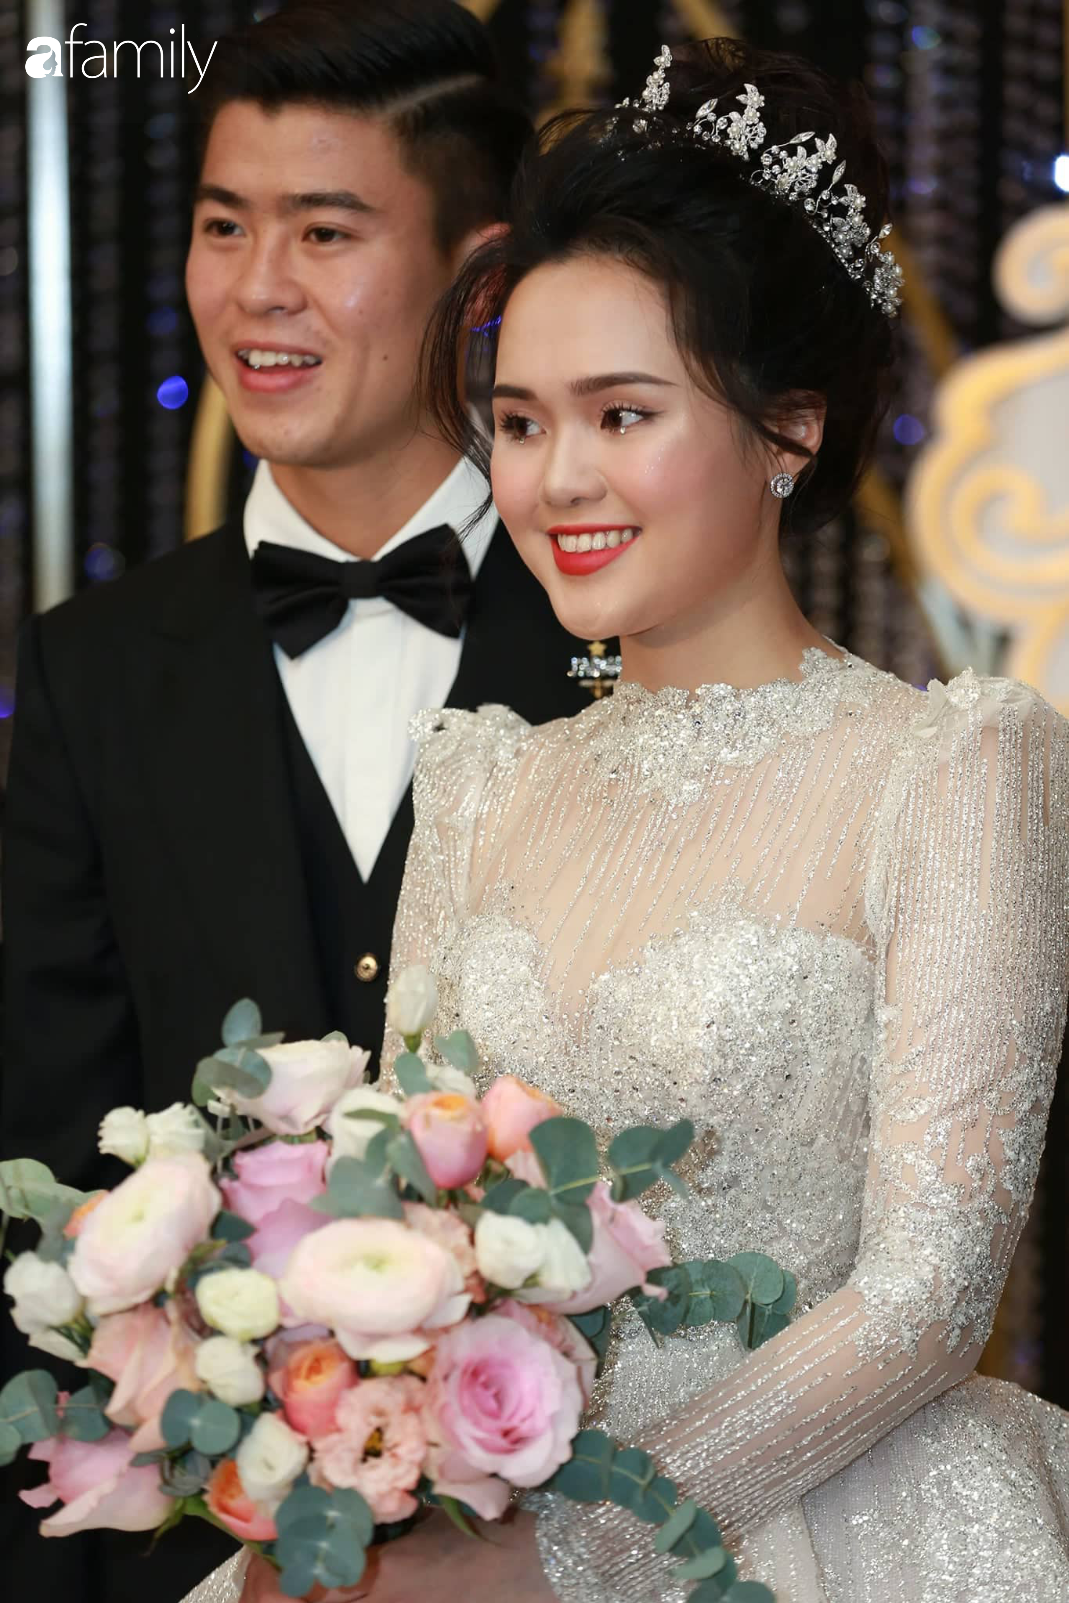 Tiếp tục màn khen nhan sắc cô dâu: Quỳnh Anh xinh muốn lịm tim, khoe layout make up chưa từng có tiền lệ tại Vbiz - Ảnh 5.